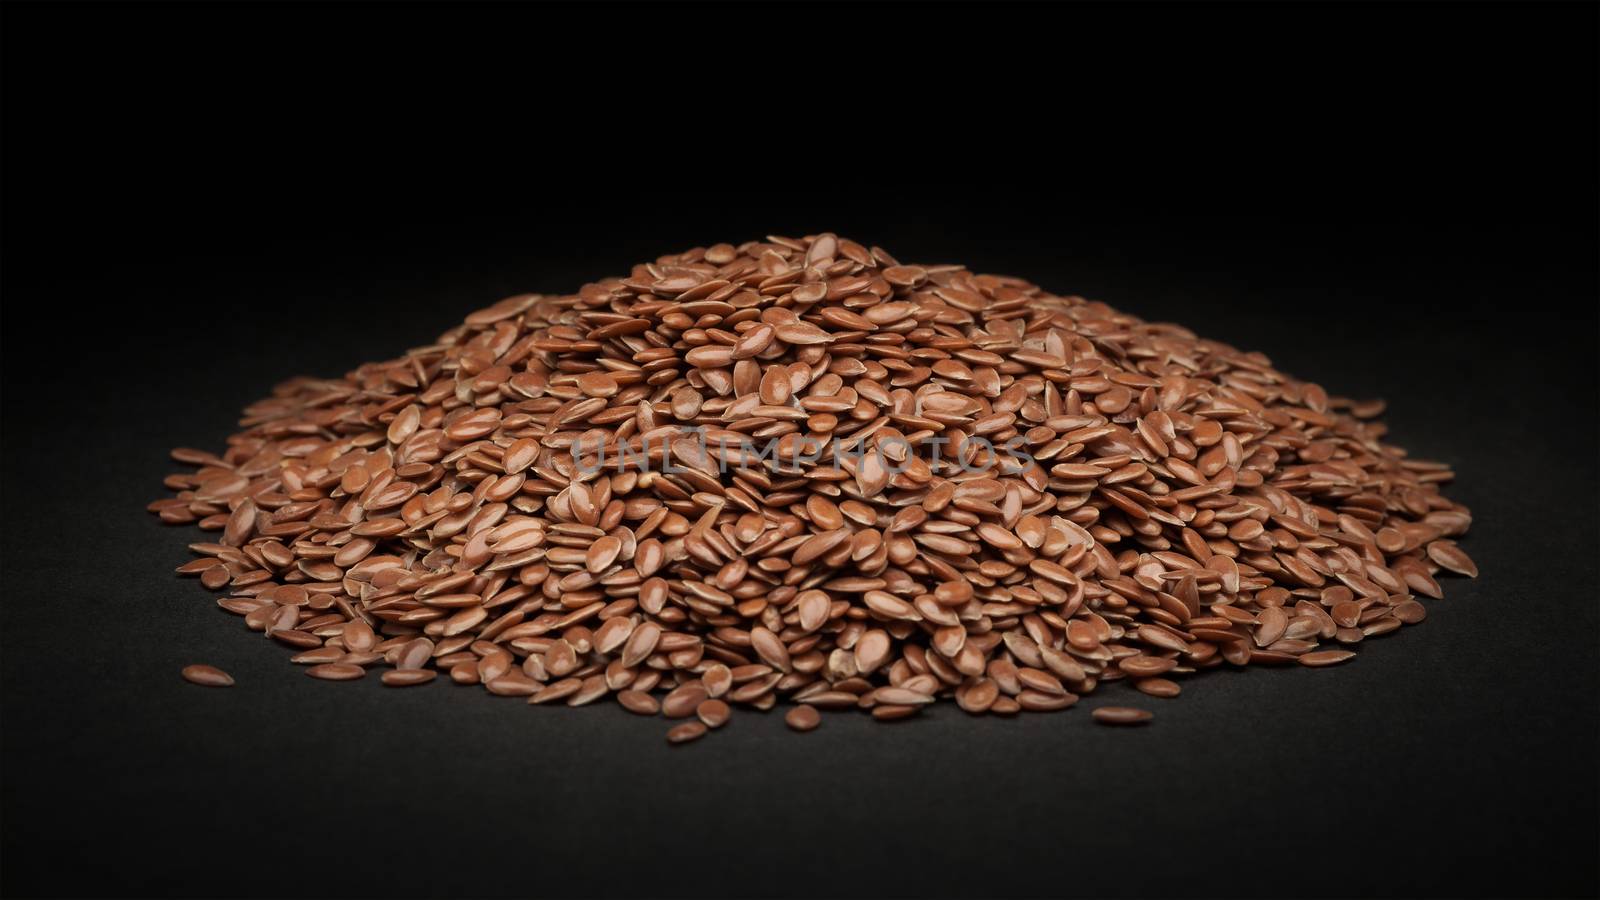 Pile of Organic Linseed or Flaxseed (Linum usitatissimum) on dark background.